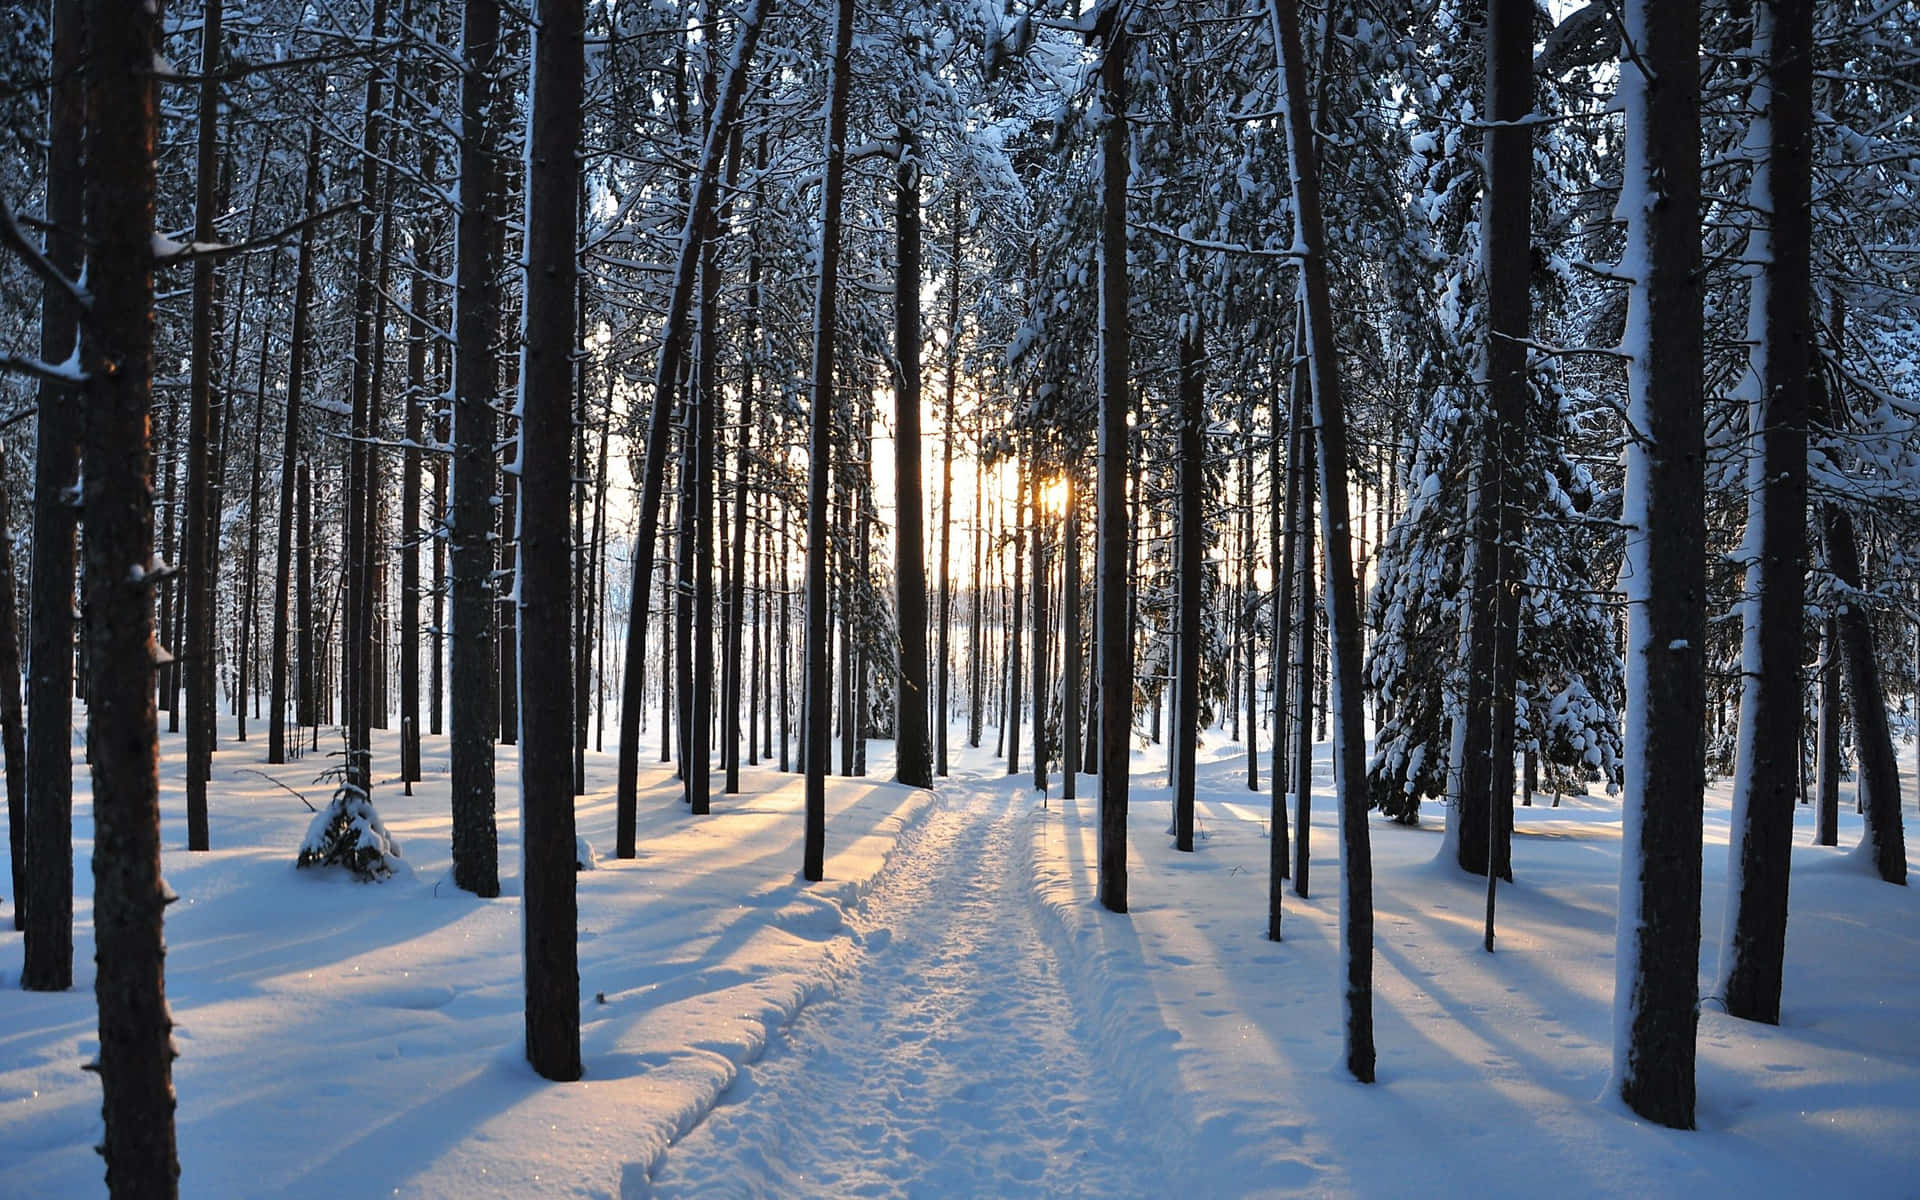 Majestic Winter Trees in a Snowy Landscape Wallpaper